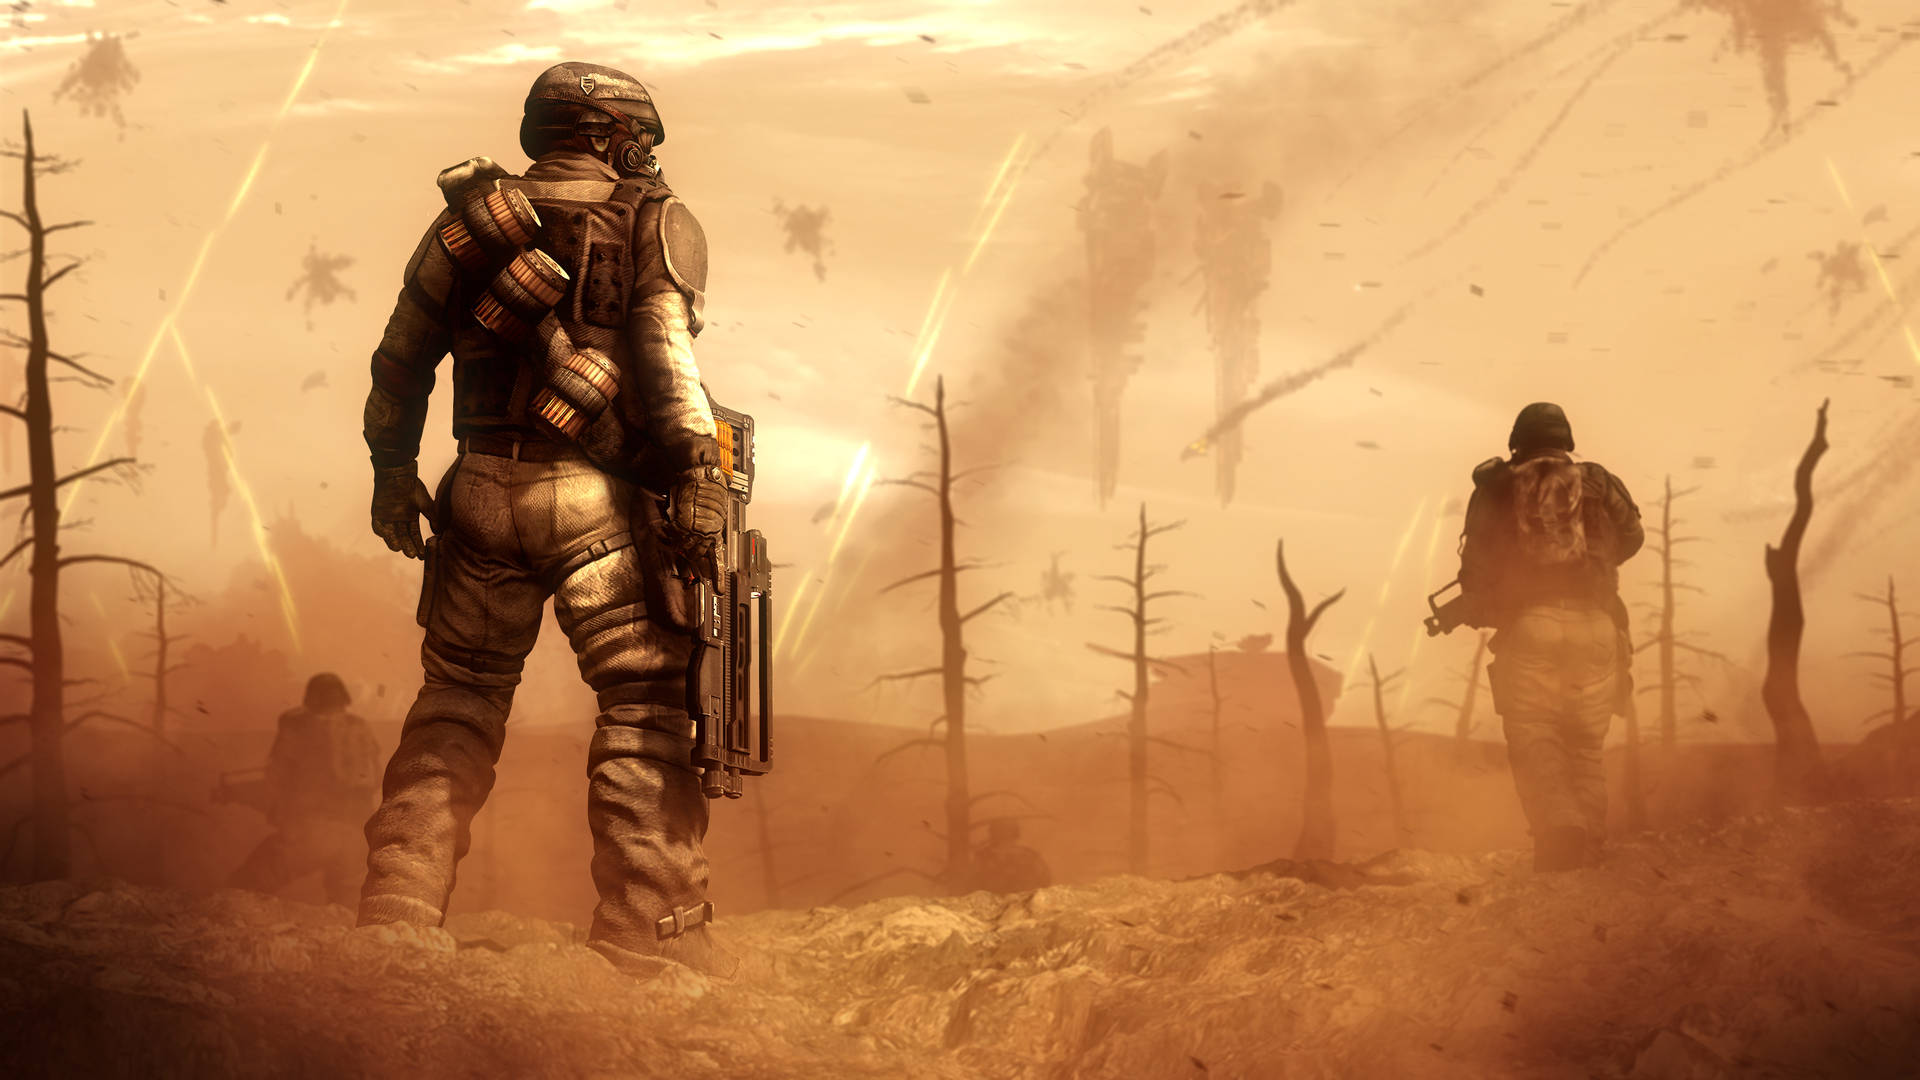 Wasteland Soldiers In Battlefield Background